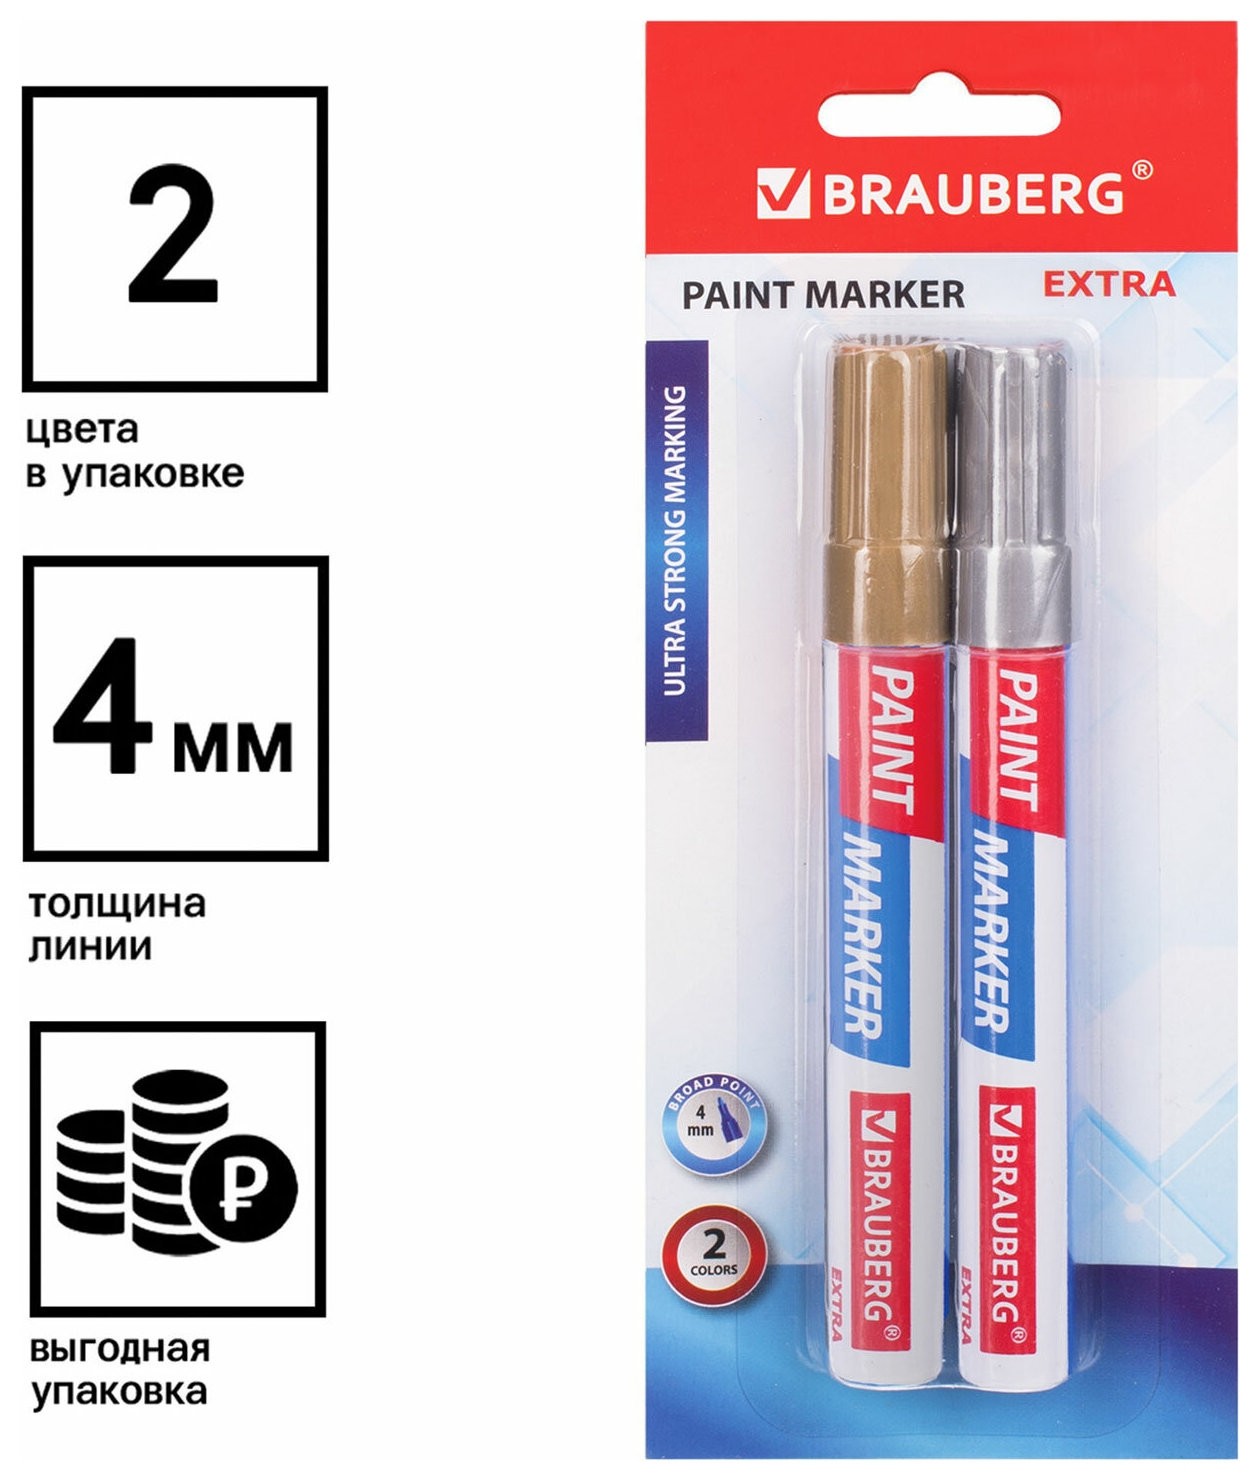 Маркер-краска лаковый Extra (Paint Marker) 4 мм, набор 2 цвета, золотой/серебряный, усиленная нитро-основа, Brauberg, 151997